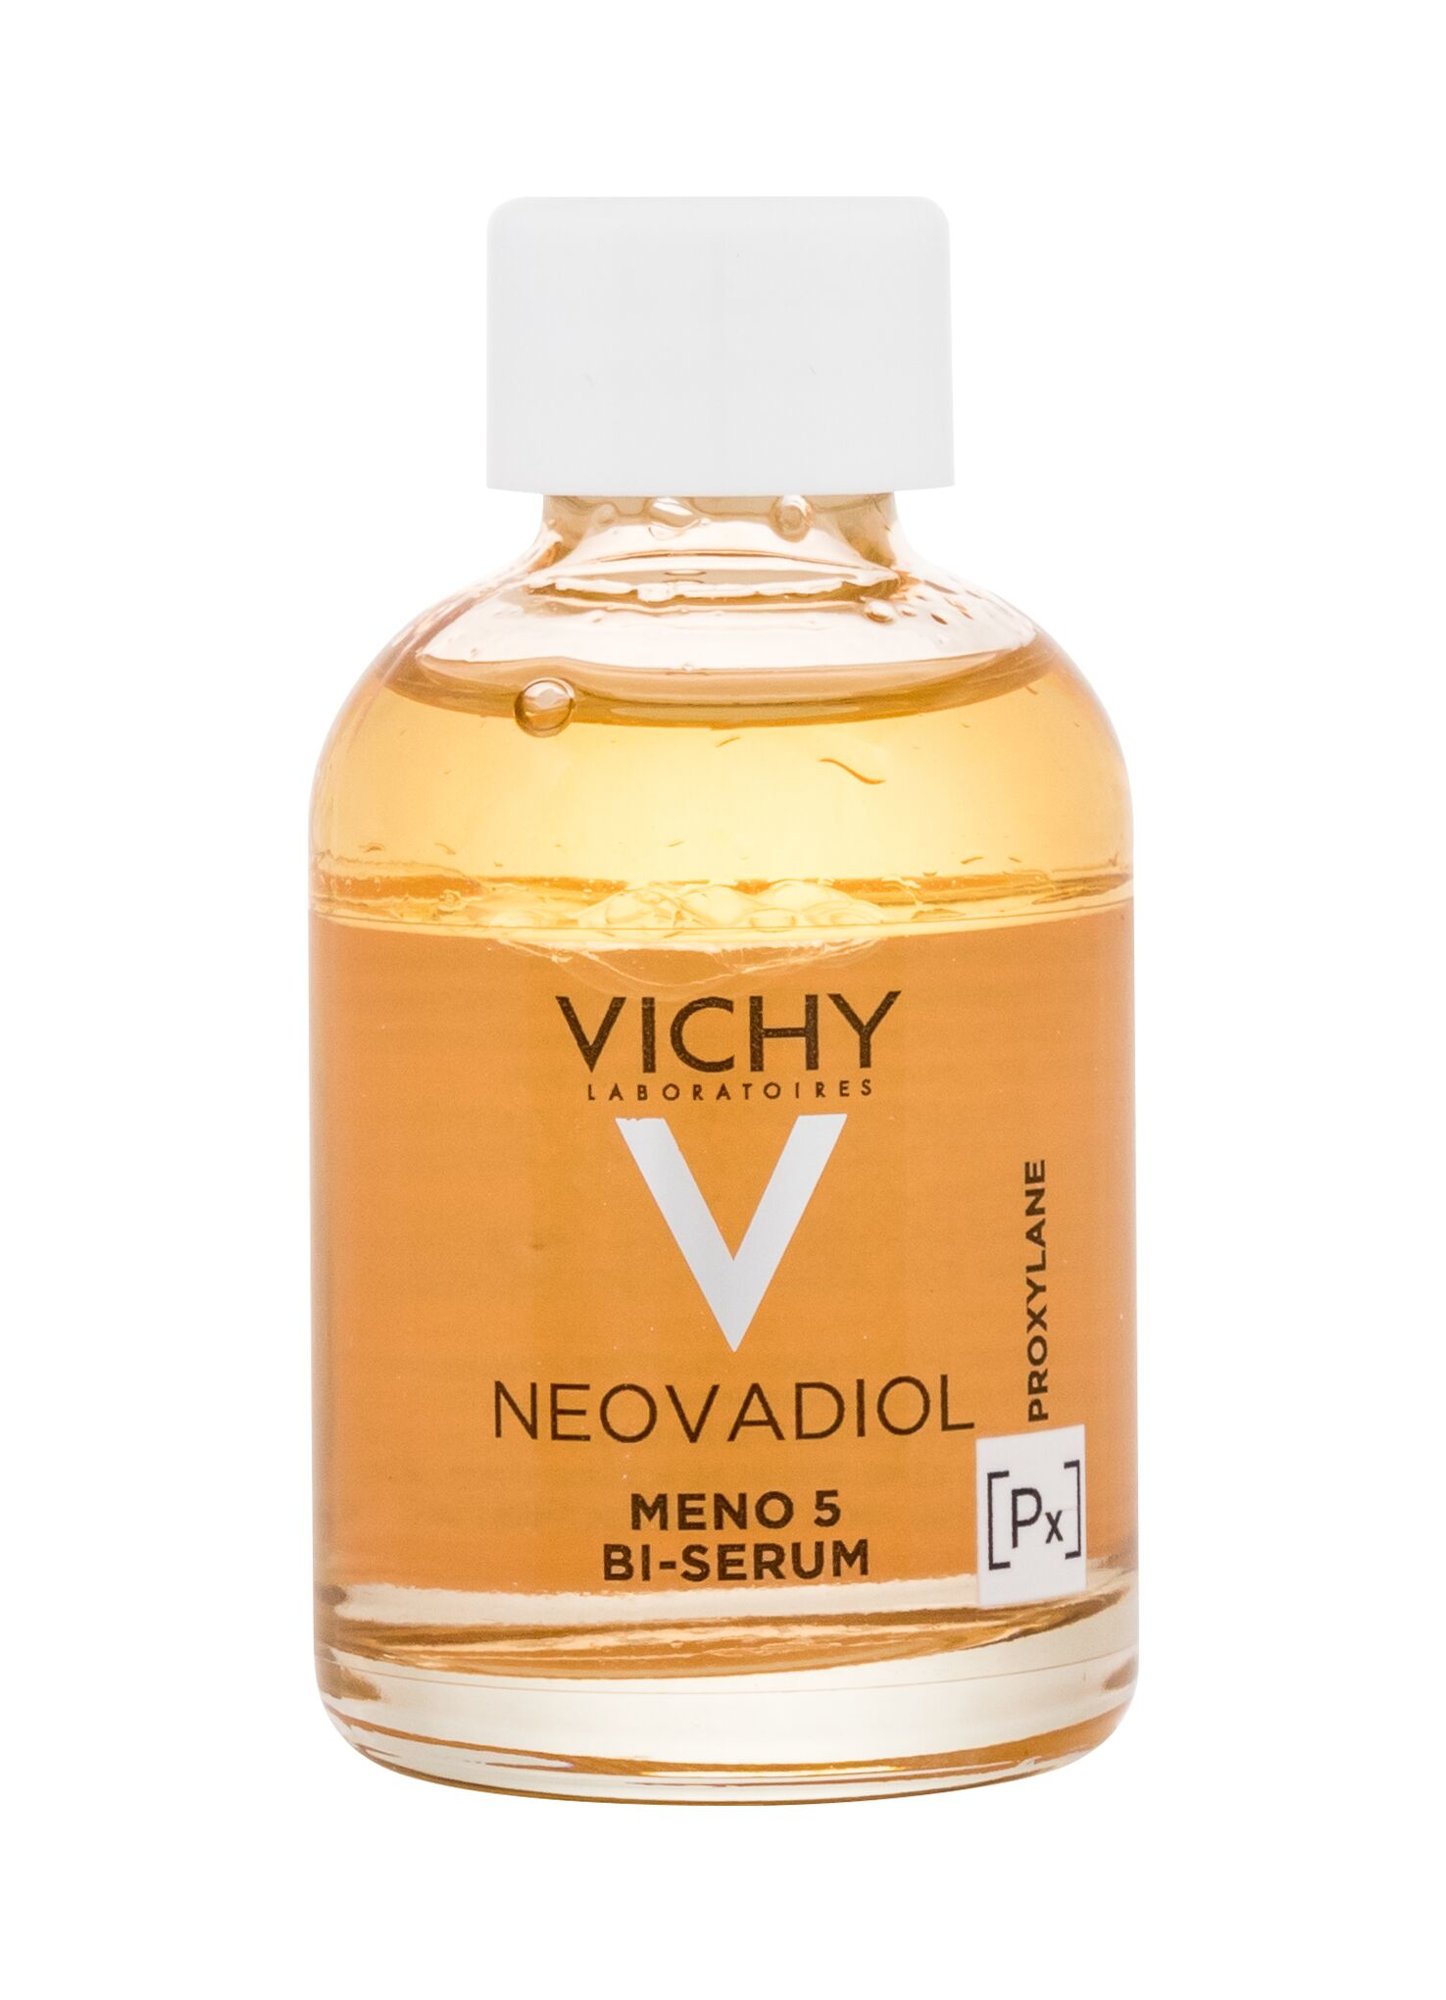 Vichy Neovadiol Meno 5 Bi-Serum 30ml Veido serumas